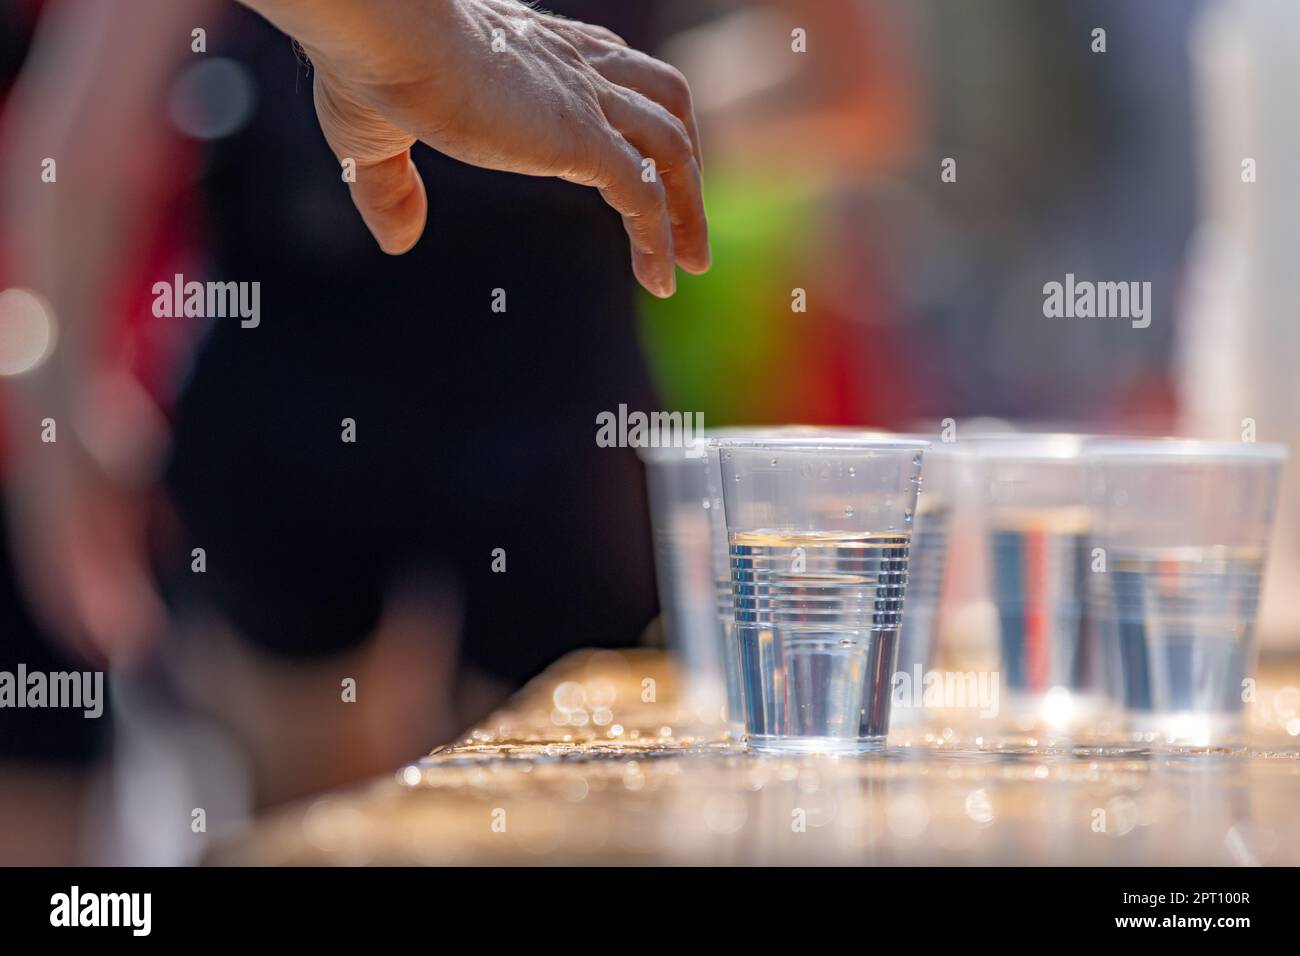 Die Hand eines Marathonläufers greift nach einem Plastikbecher mit Wasser Stockfoto